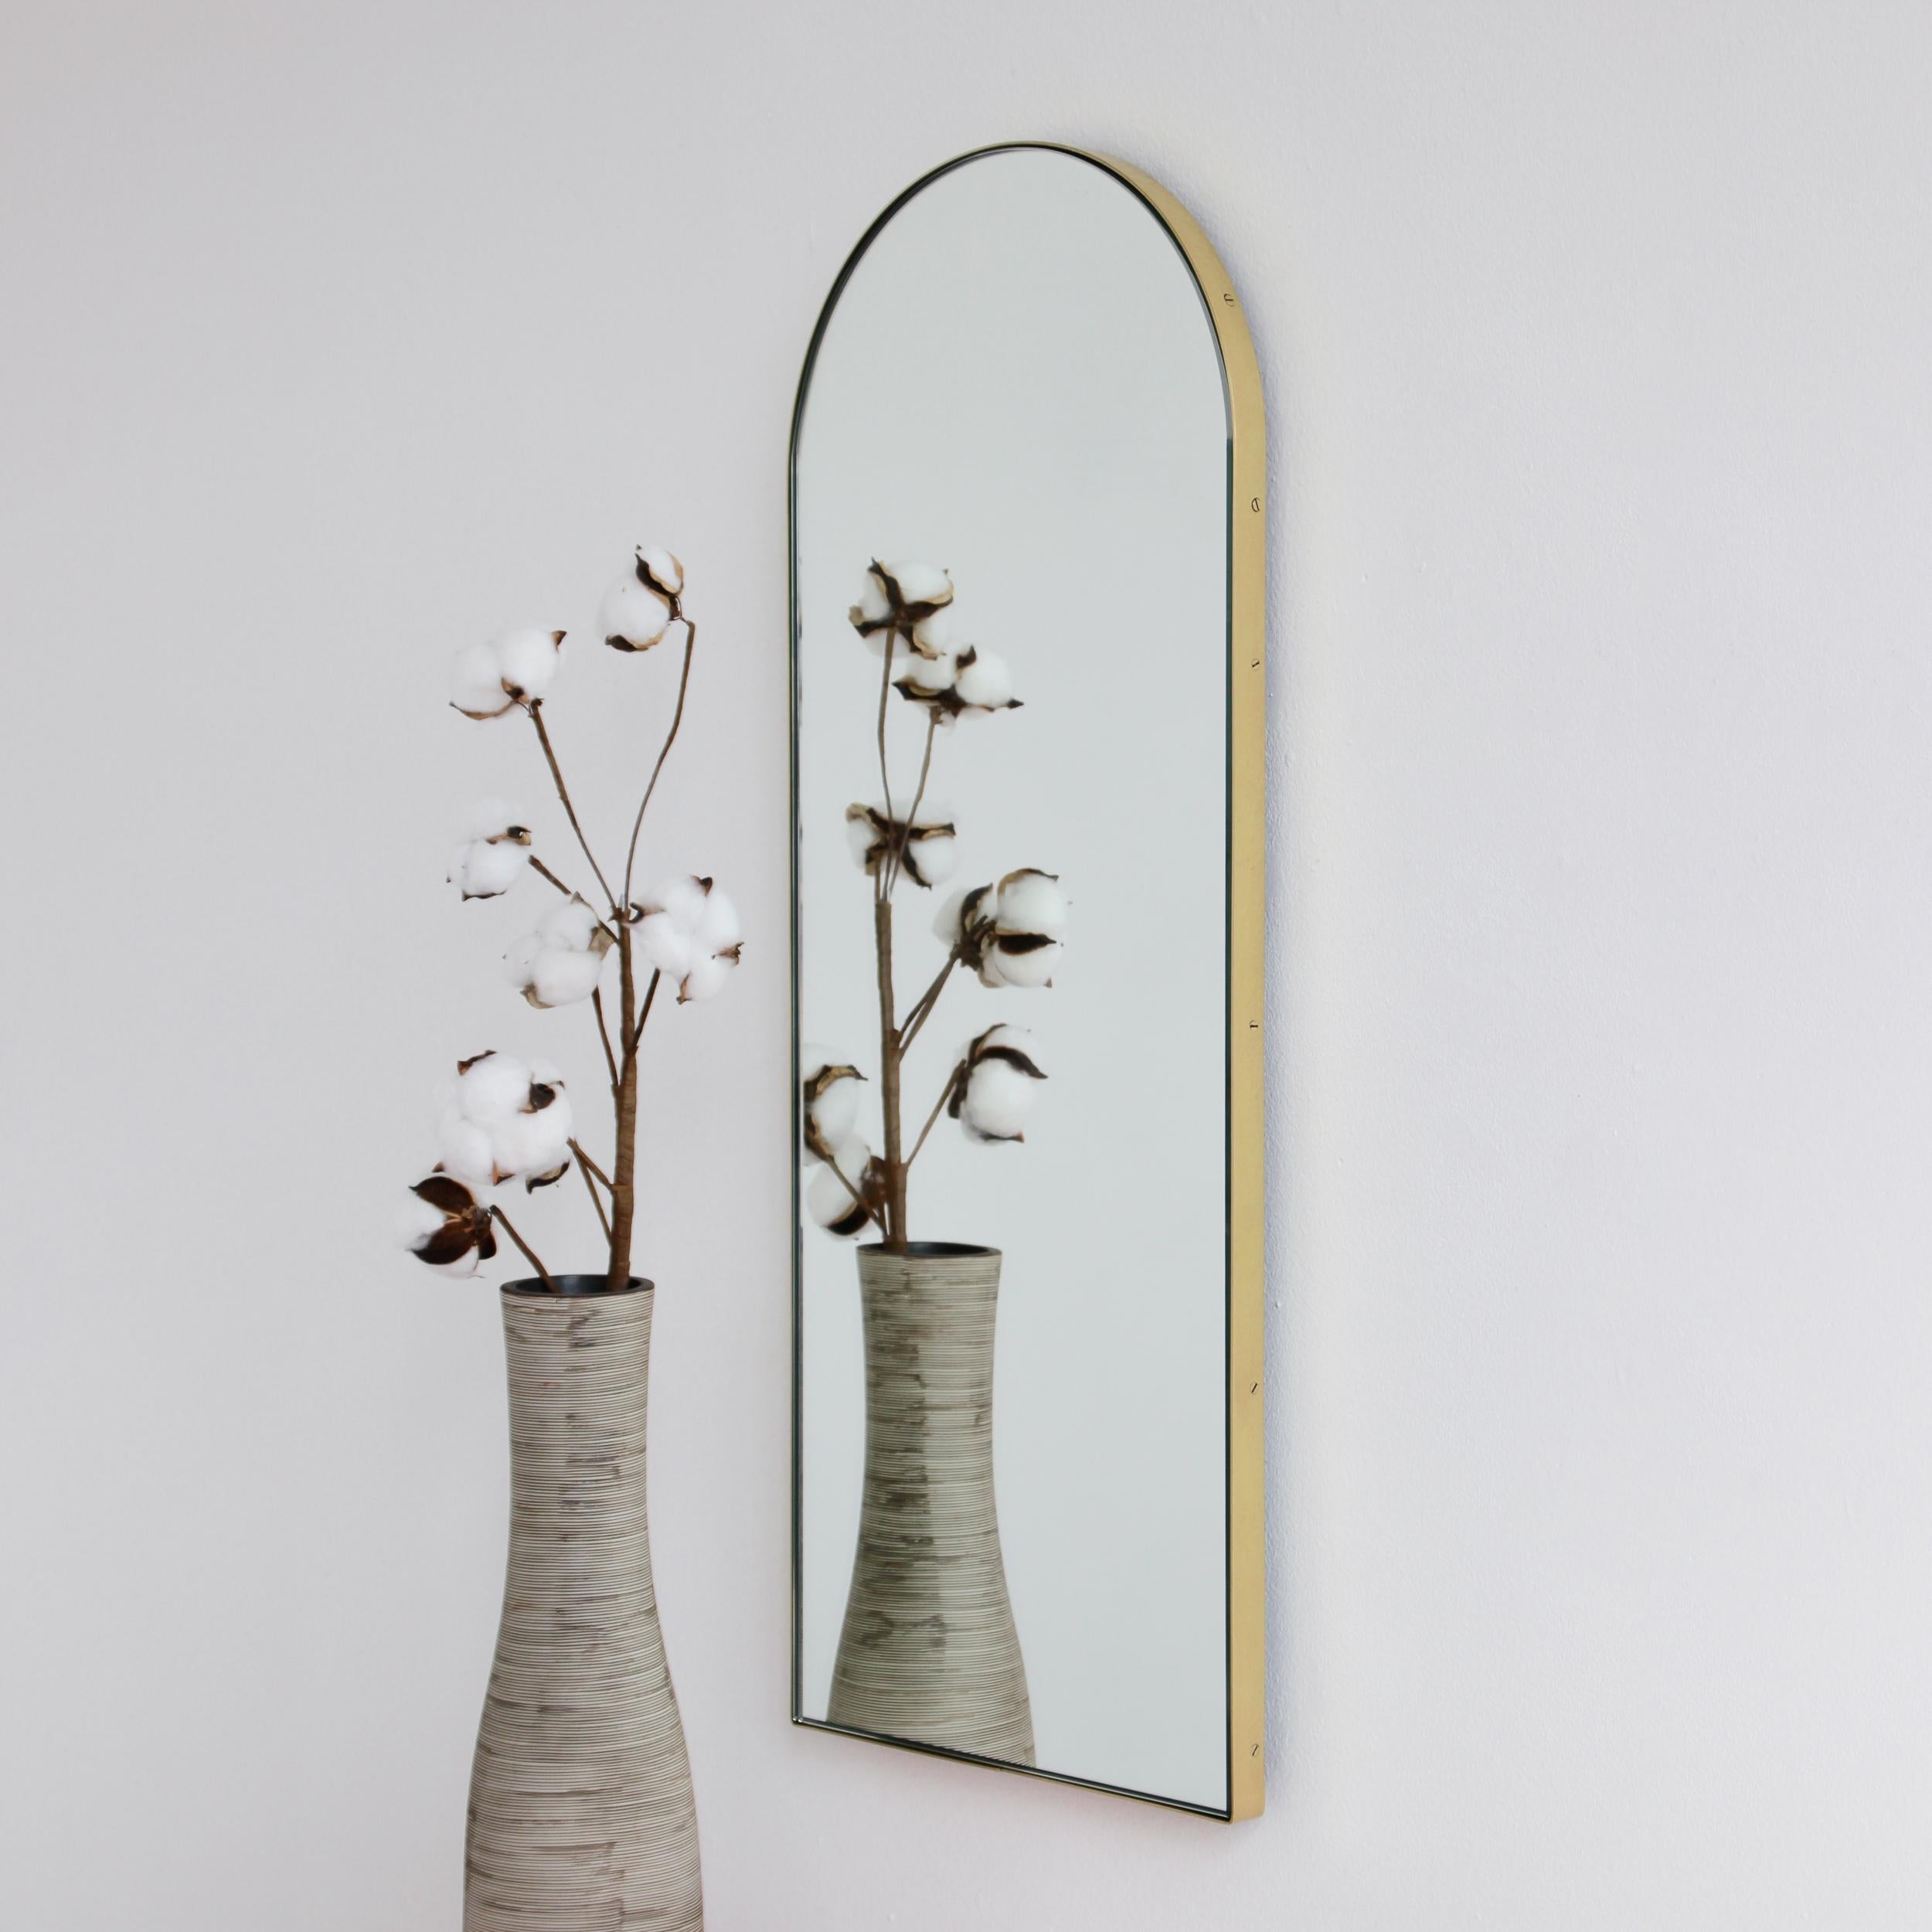 Wunderschöner bogenförmiger Spiegel mit einem eleganten Rahmen aus gebürstetem Messing. Entworfen und handgefertigt in London, UK.

Die mittelgroßen, großen und extragroßen Spiegel (37 cm x 56 cm, 46 cm x 71 cm und 48 cm x 97 cm) sind mit einem